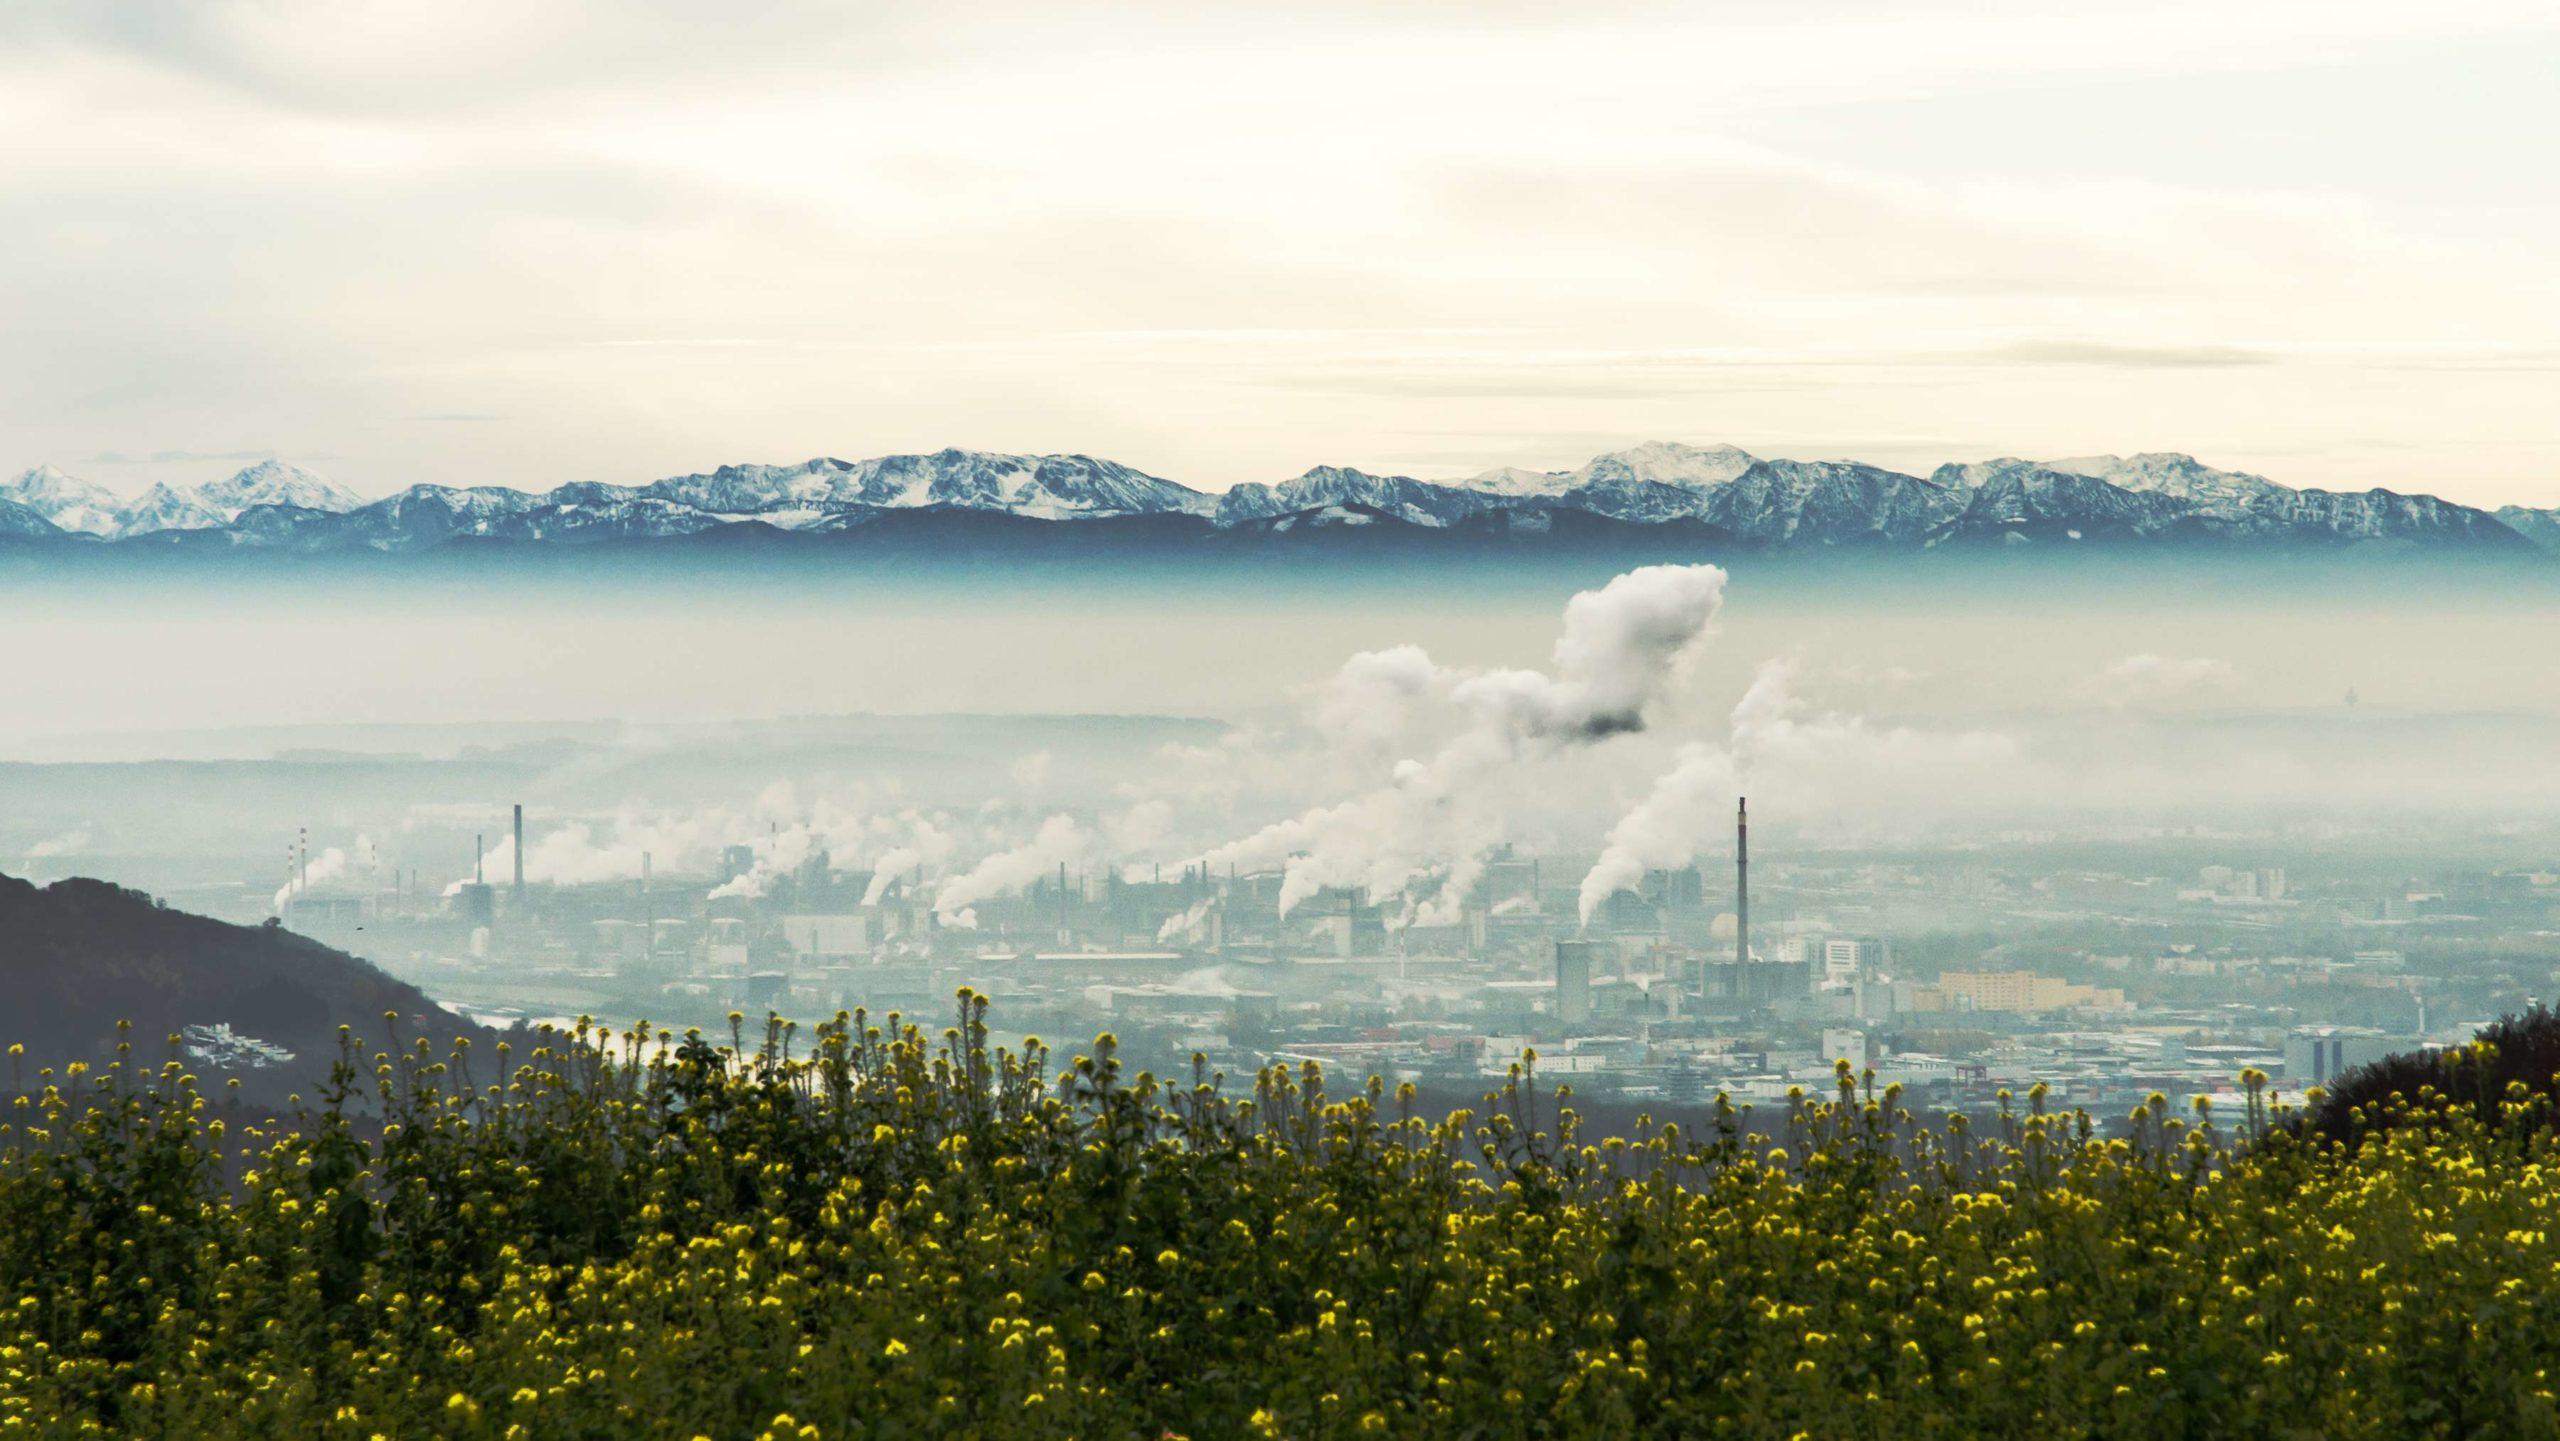 Stadtbild von Linz, Hauptstadt von Oberösterreich. Chemiefabriken der VOEST Alpinen und Österreichischen Zentralalpen sichtbar.